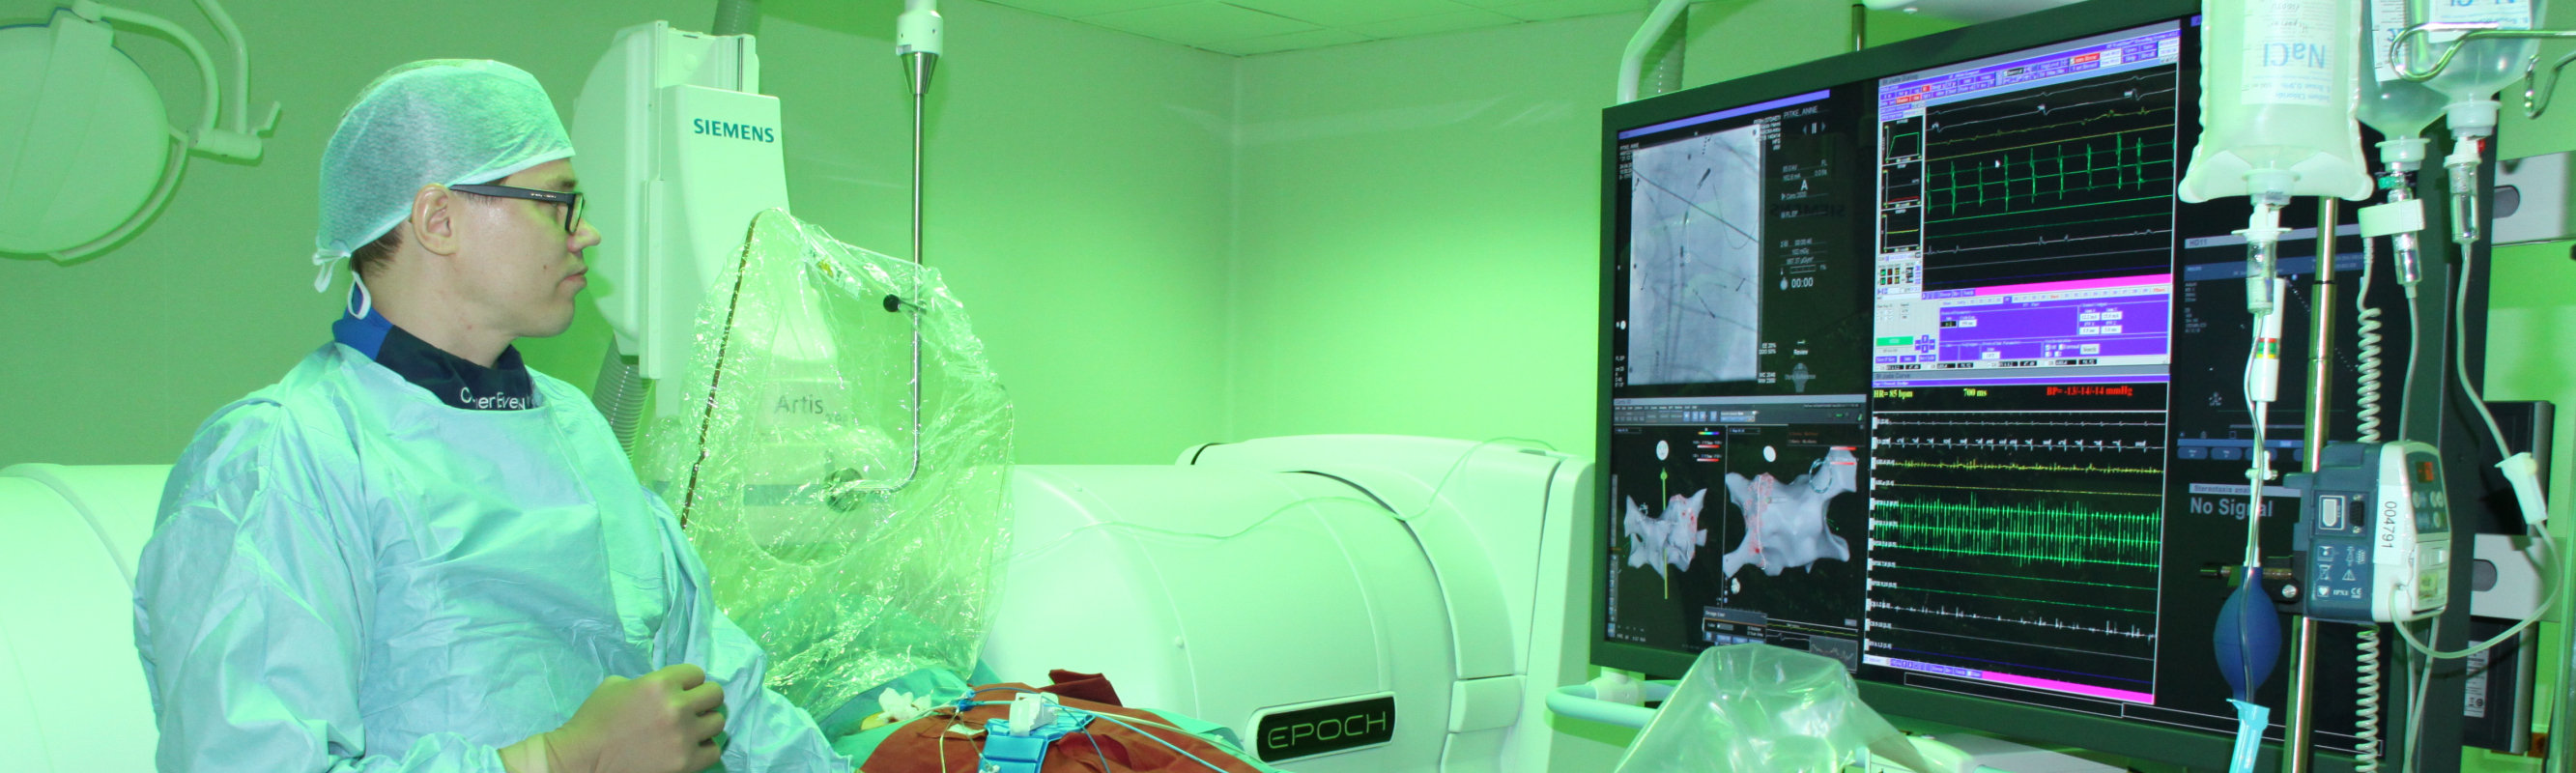 Dr Kaido Hanni kasutamas 3D piltdiagnostikaga varustatud robot-magnetnavigatsioonisüsteemi Stereotaxis